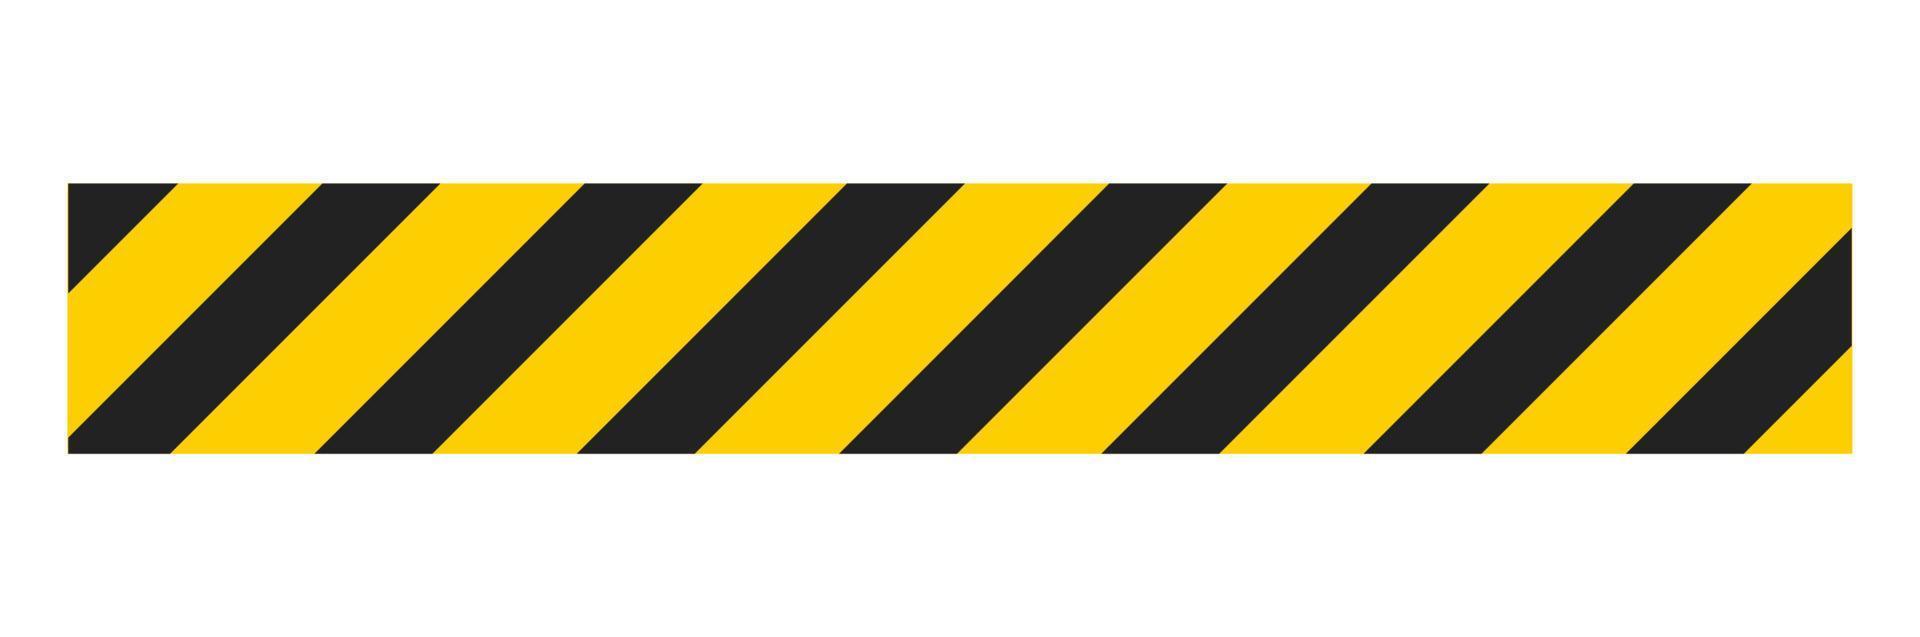 Cuidado fita conjunto do amarelo Atenção fitas. abstrato Atenção linhas para polícia, acidente, debaixo construção. vetor Perigo fita coleção.